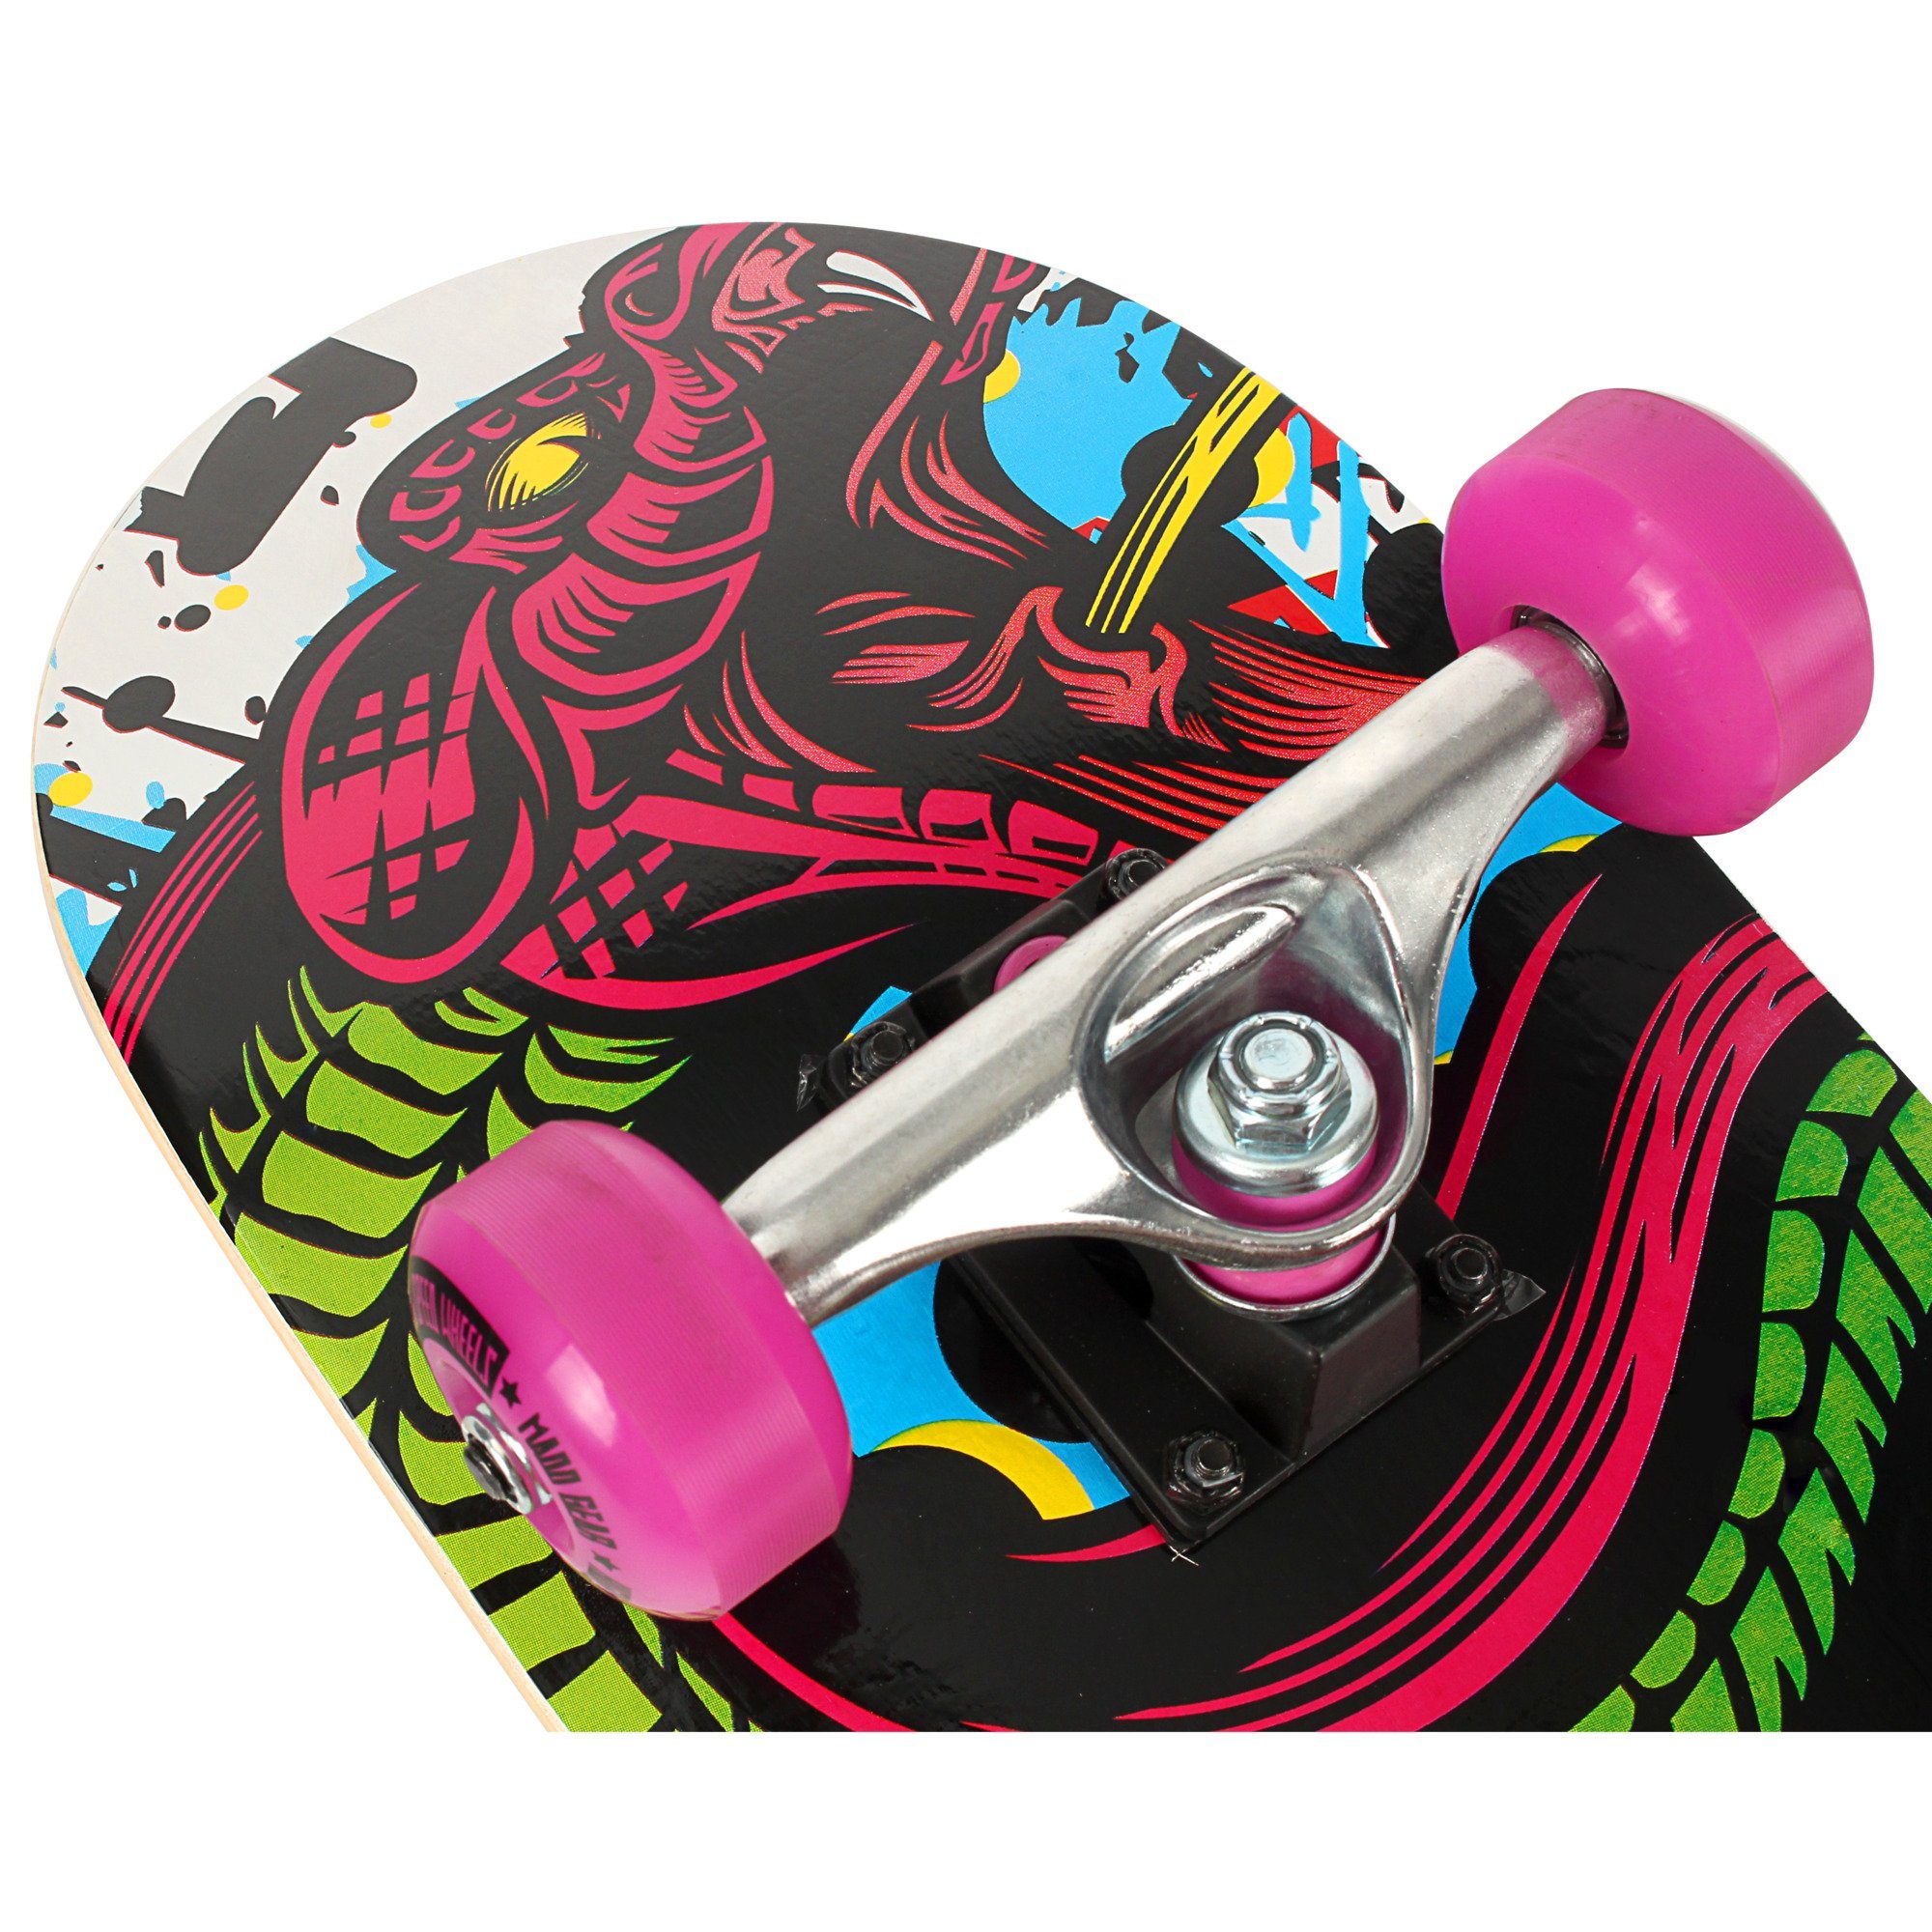 Madd Gear Skateboard Skateboard MADD ® GEAR Konda